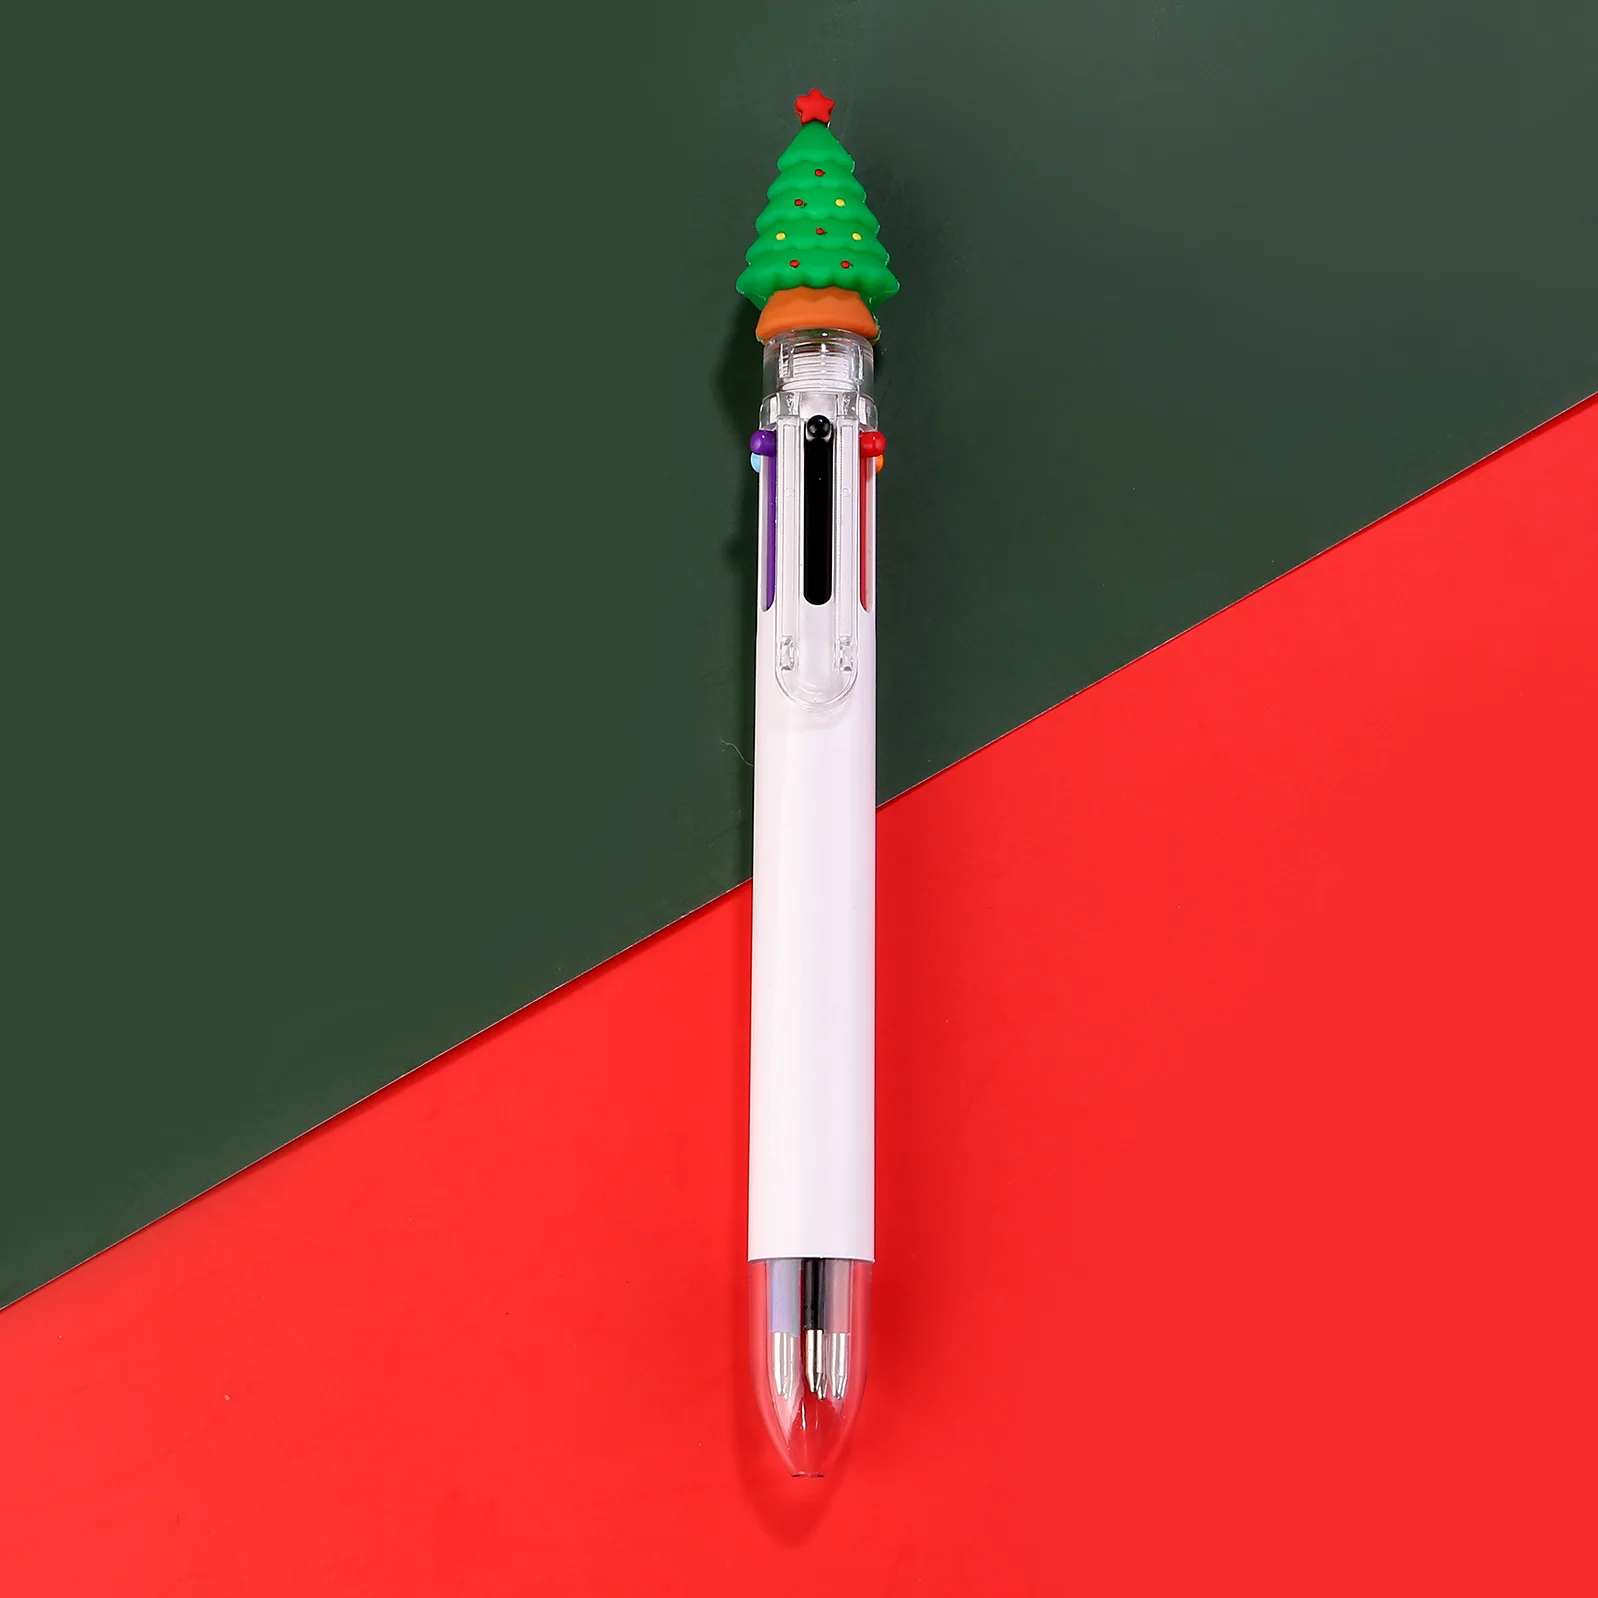 7шт Коледна 6-цветен Прибиращ химикалка писалка Cartoony Дядо Коледа Лосове Многоцветни химикалки Офис и Училищни консумативи, Подаръци